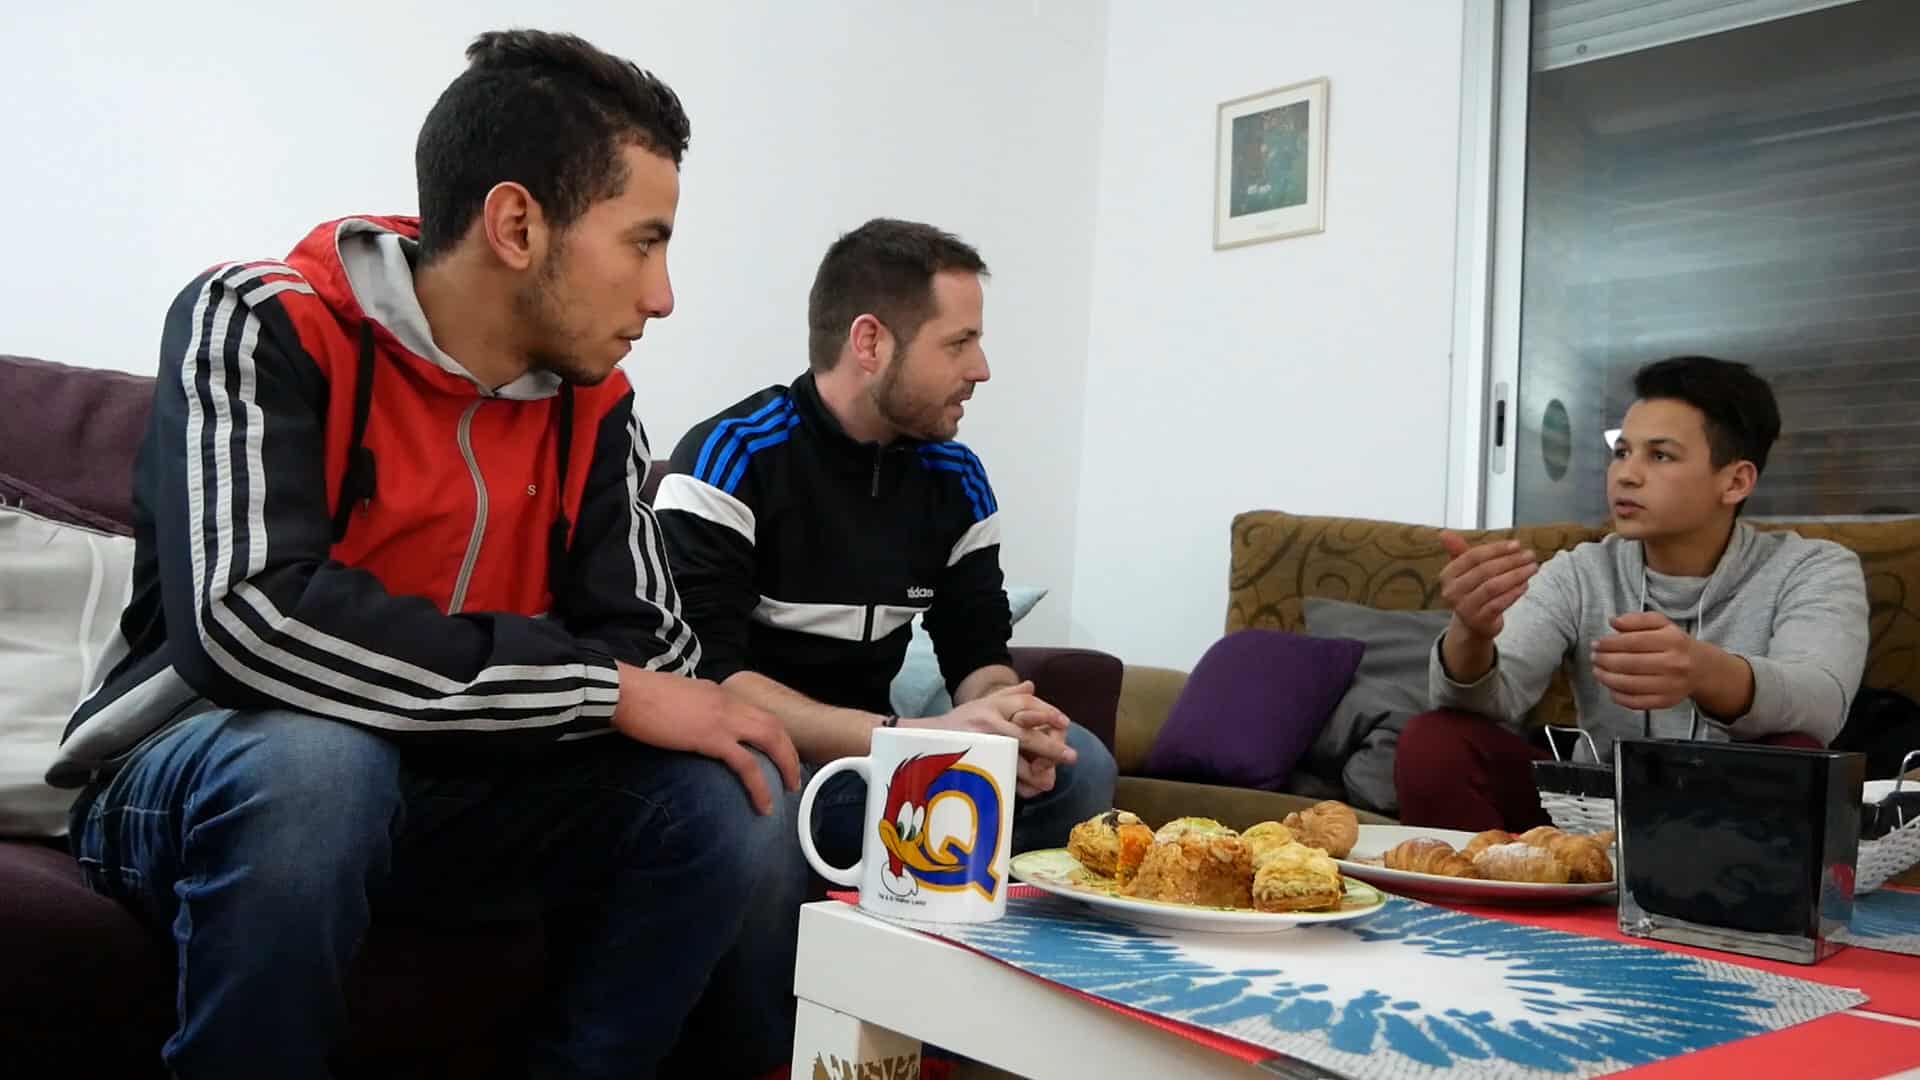 tres nois asseguts en un sofà. DAvant una taula amb pastes dolçes i una taça. 